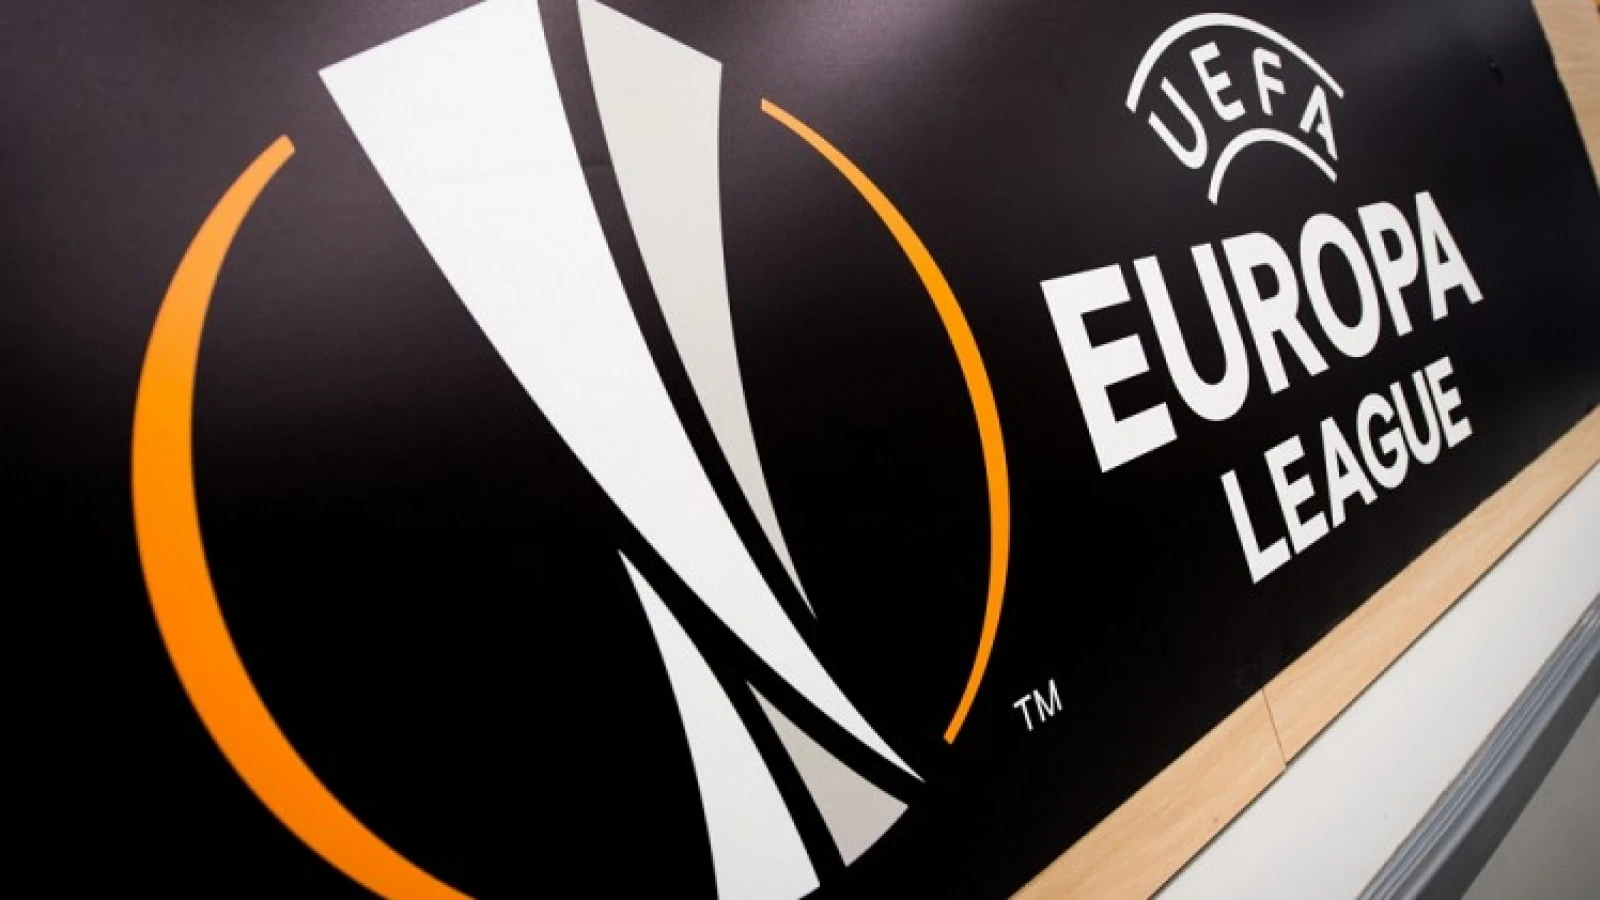 Nog kaarten beschikbaar voor het Europa League kwalificatieduel